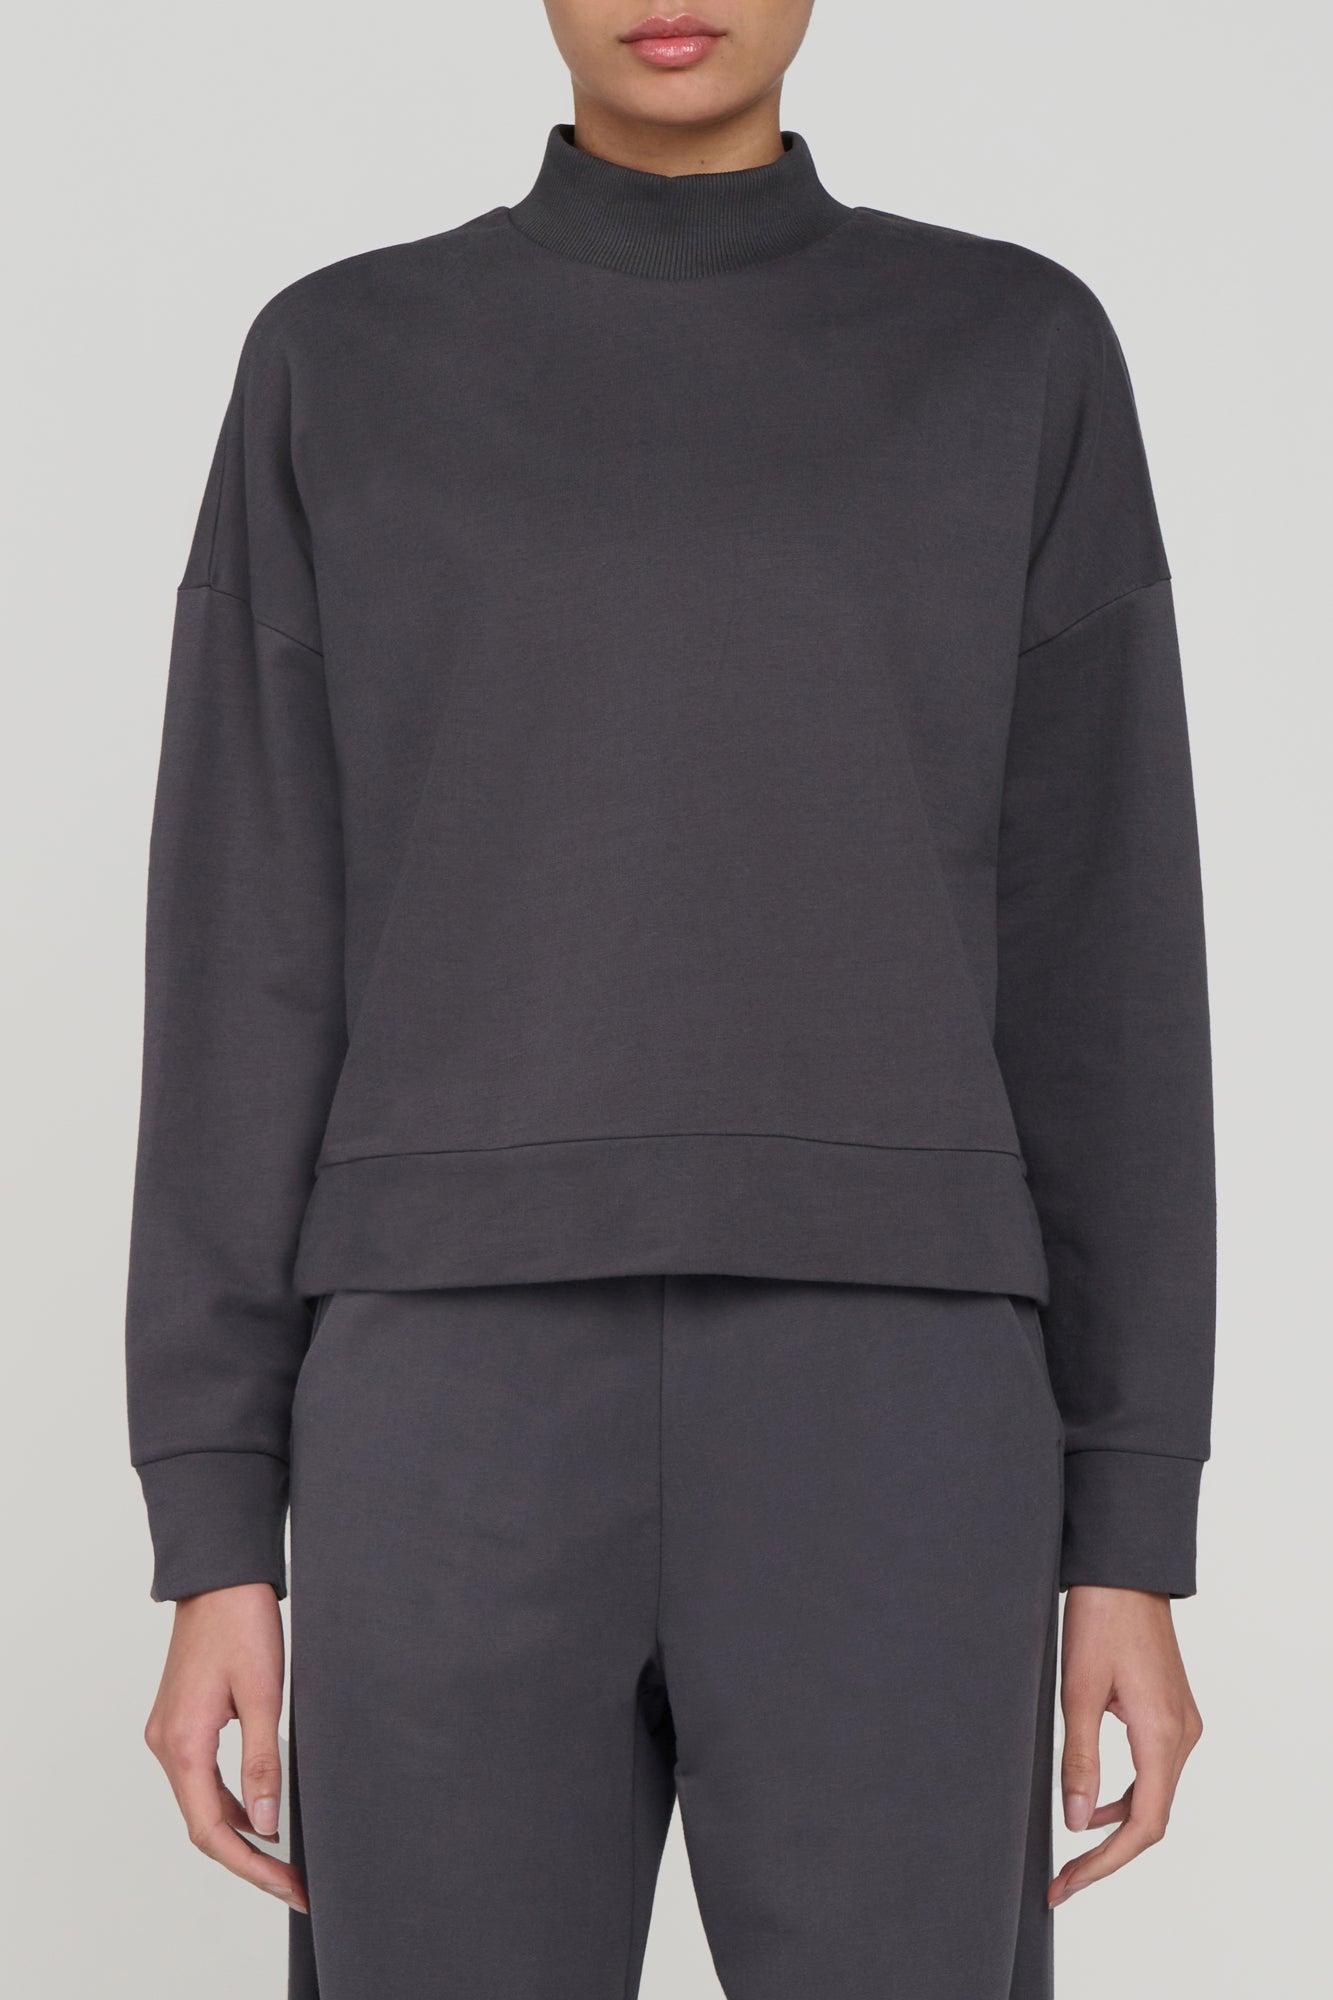 Kyodan Outdoor Mock Collar Sweatshirt - Save 67%